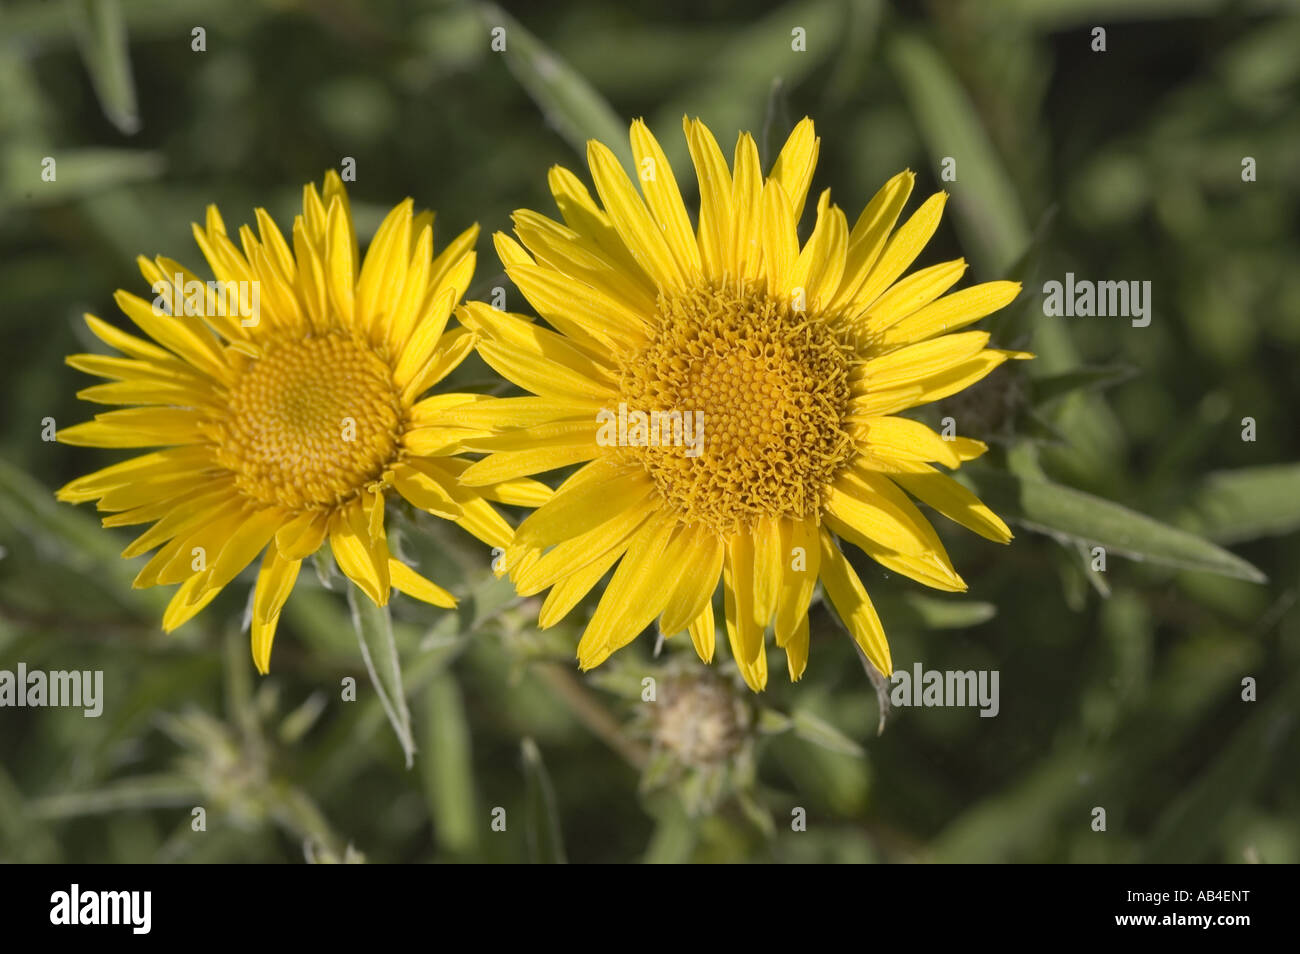 Yellow flowers of Swordleaf Inula - Inula ensifolia Stock Photo